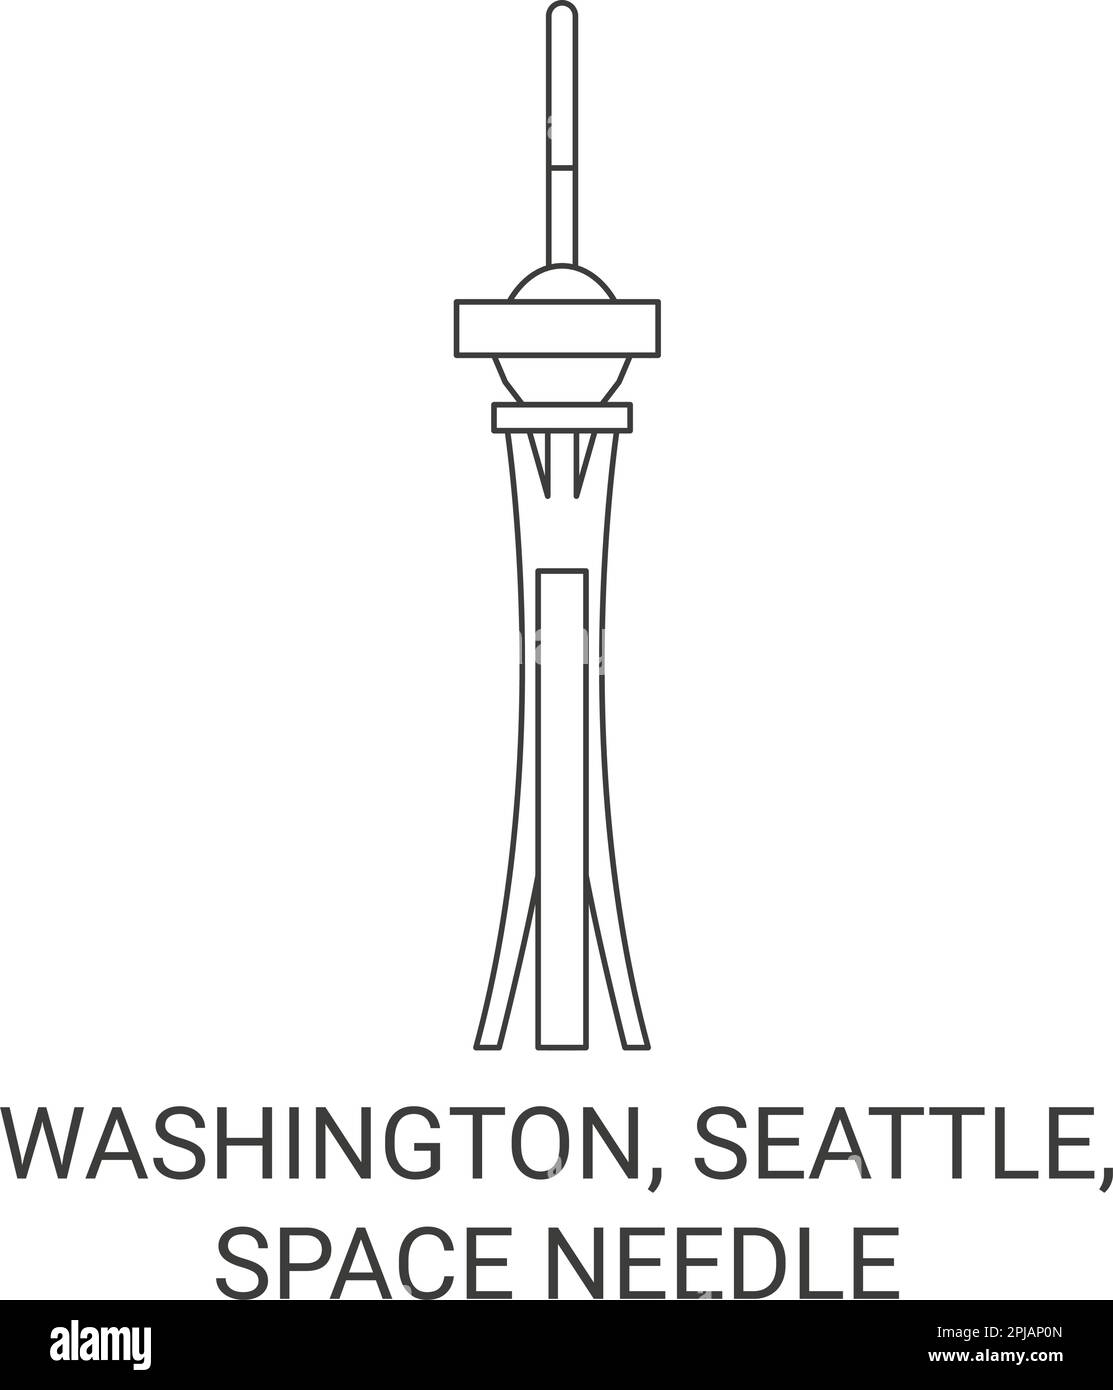 Stati Uniti, Washington, Seattle, Space Needle viaggio riferimento vettoriale illustrazione Illustrazione Vettoriale